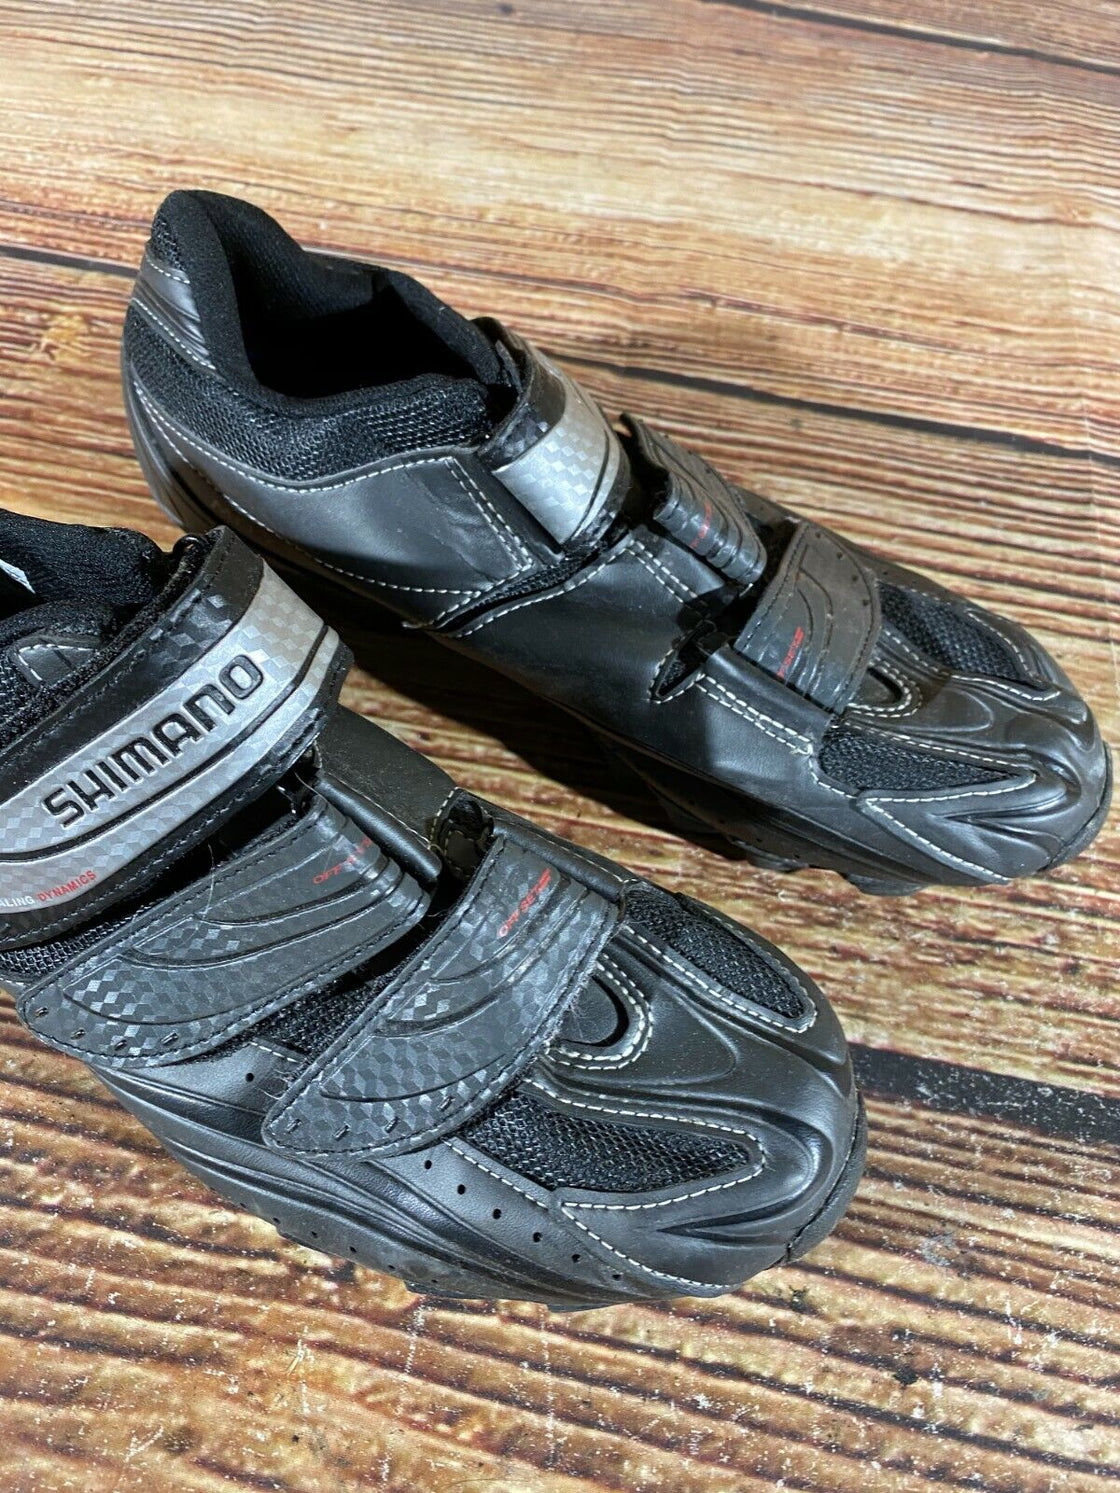 SHIMANO M077 Cycling MTB Shoes Mountain Bike Boots Size EU45, US10.5, Mondo 285